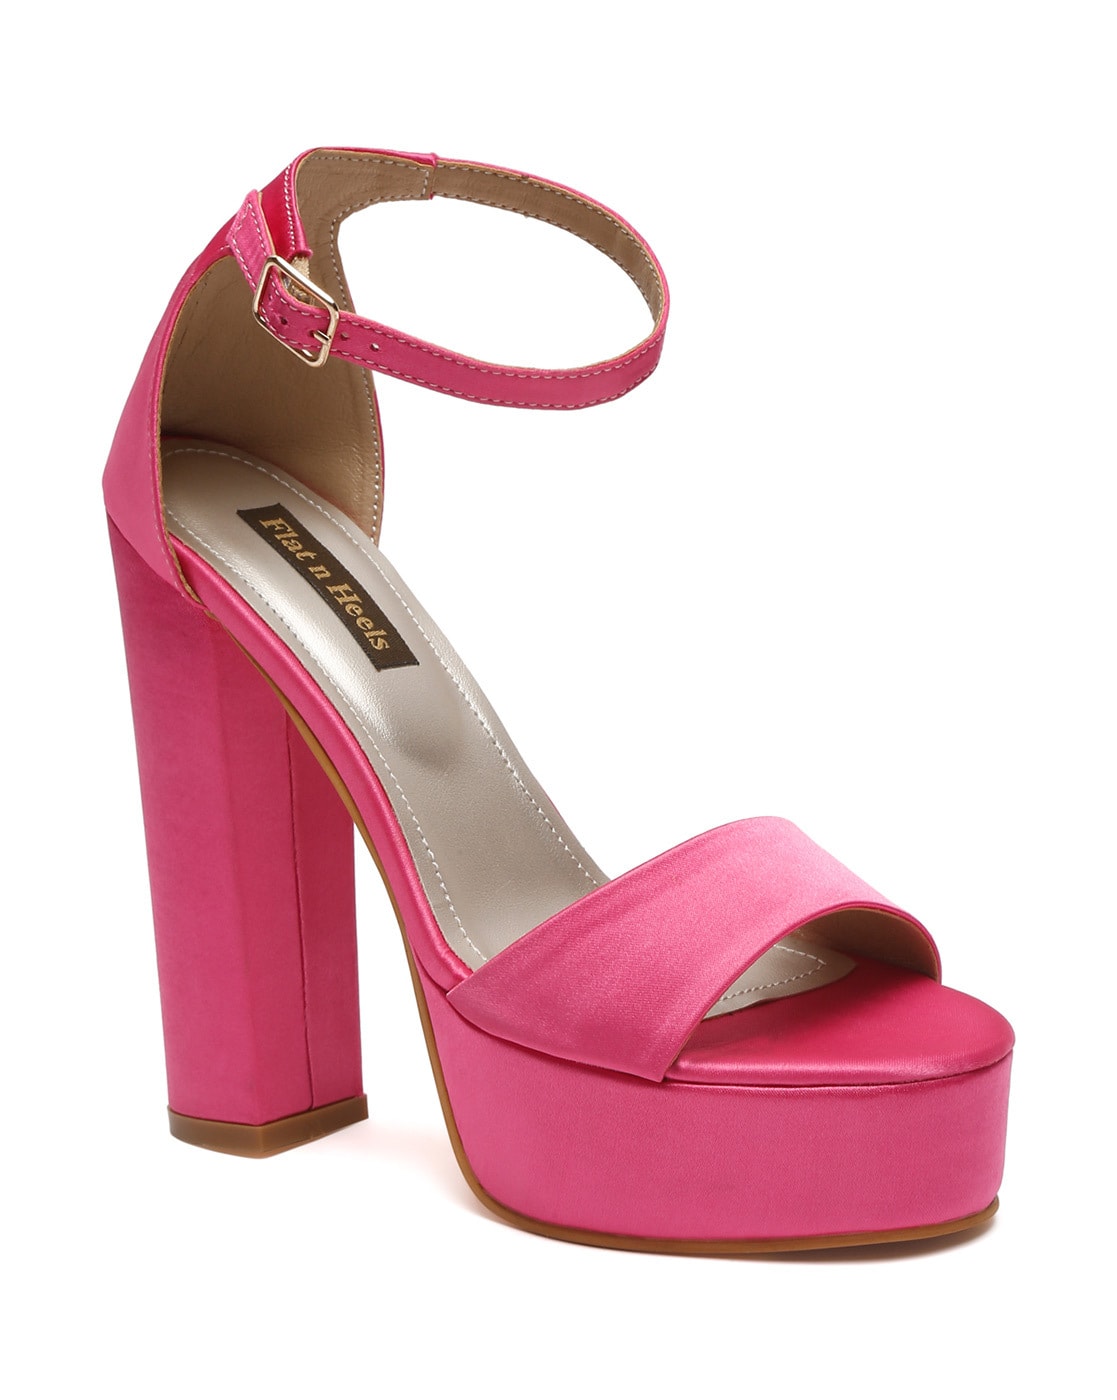 Heels Online - Buy High Heels, Pencil Heels Sandals Online | Myntra